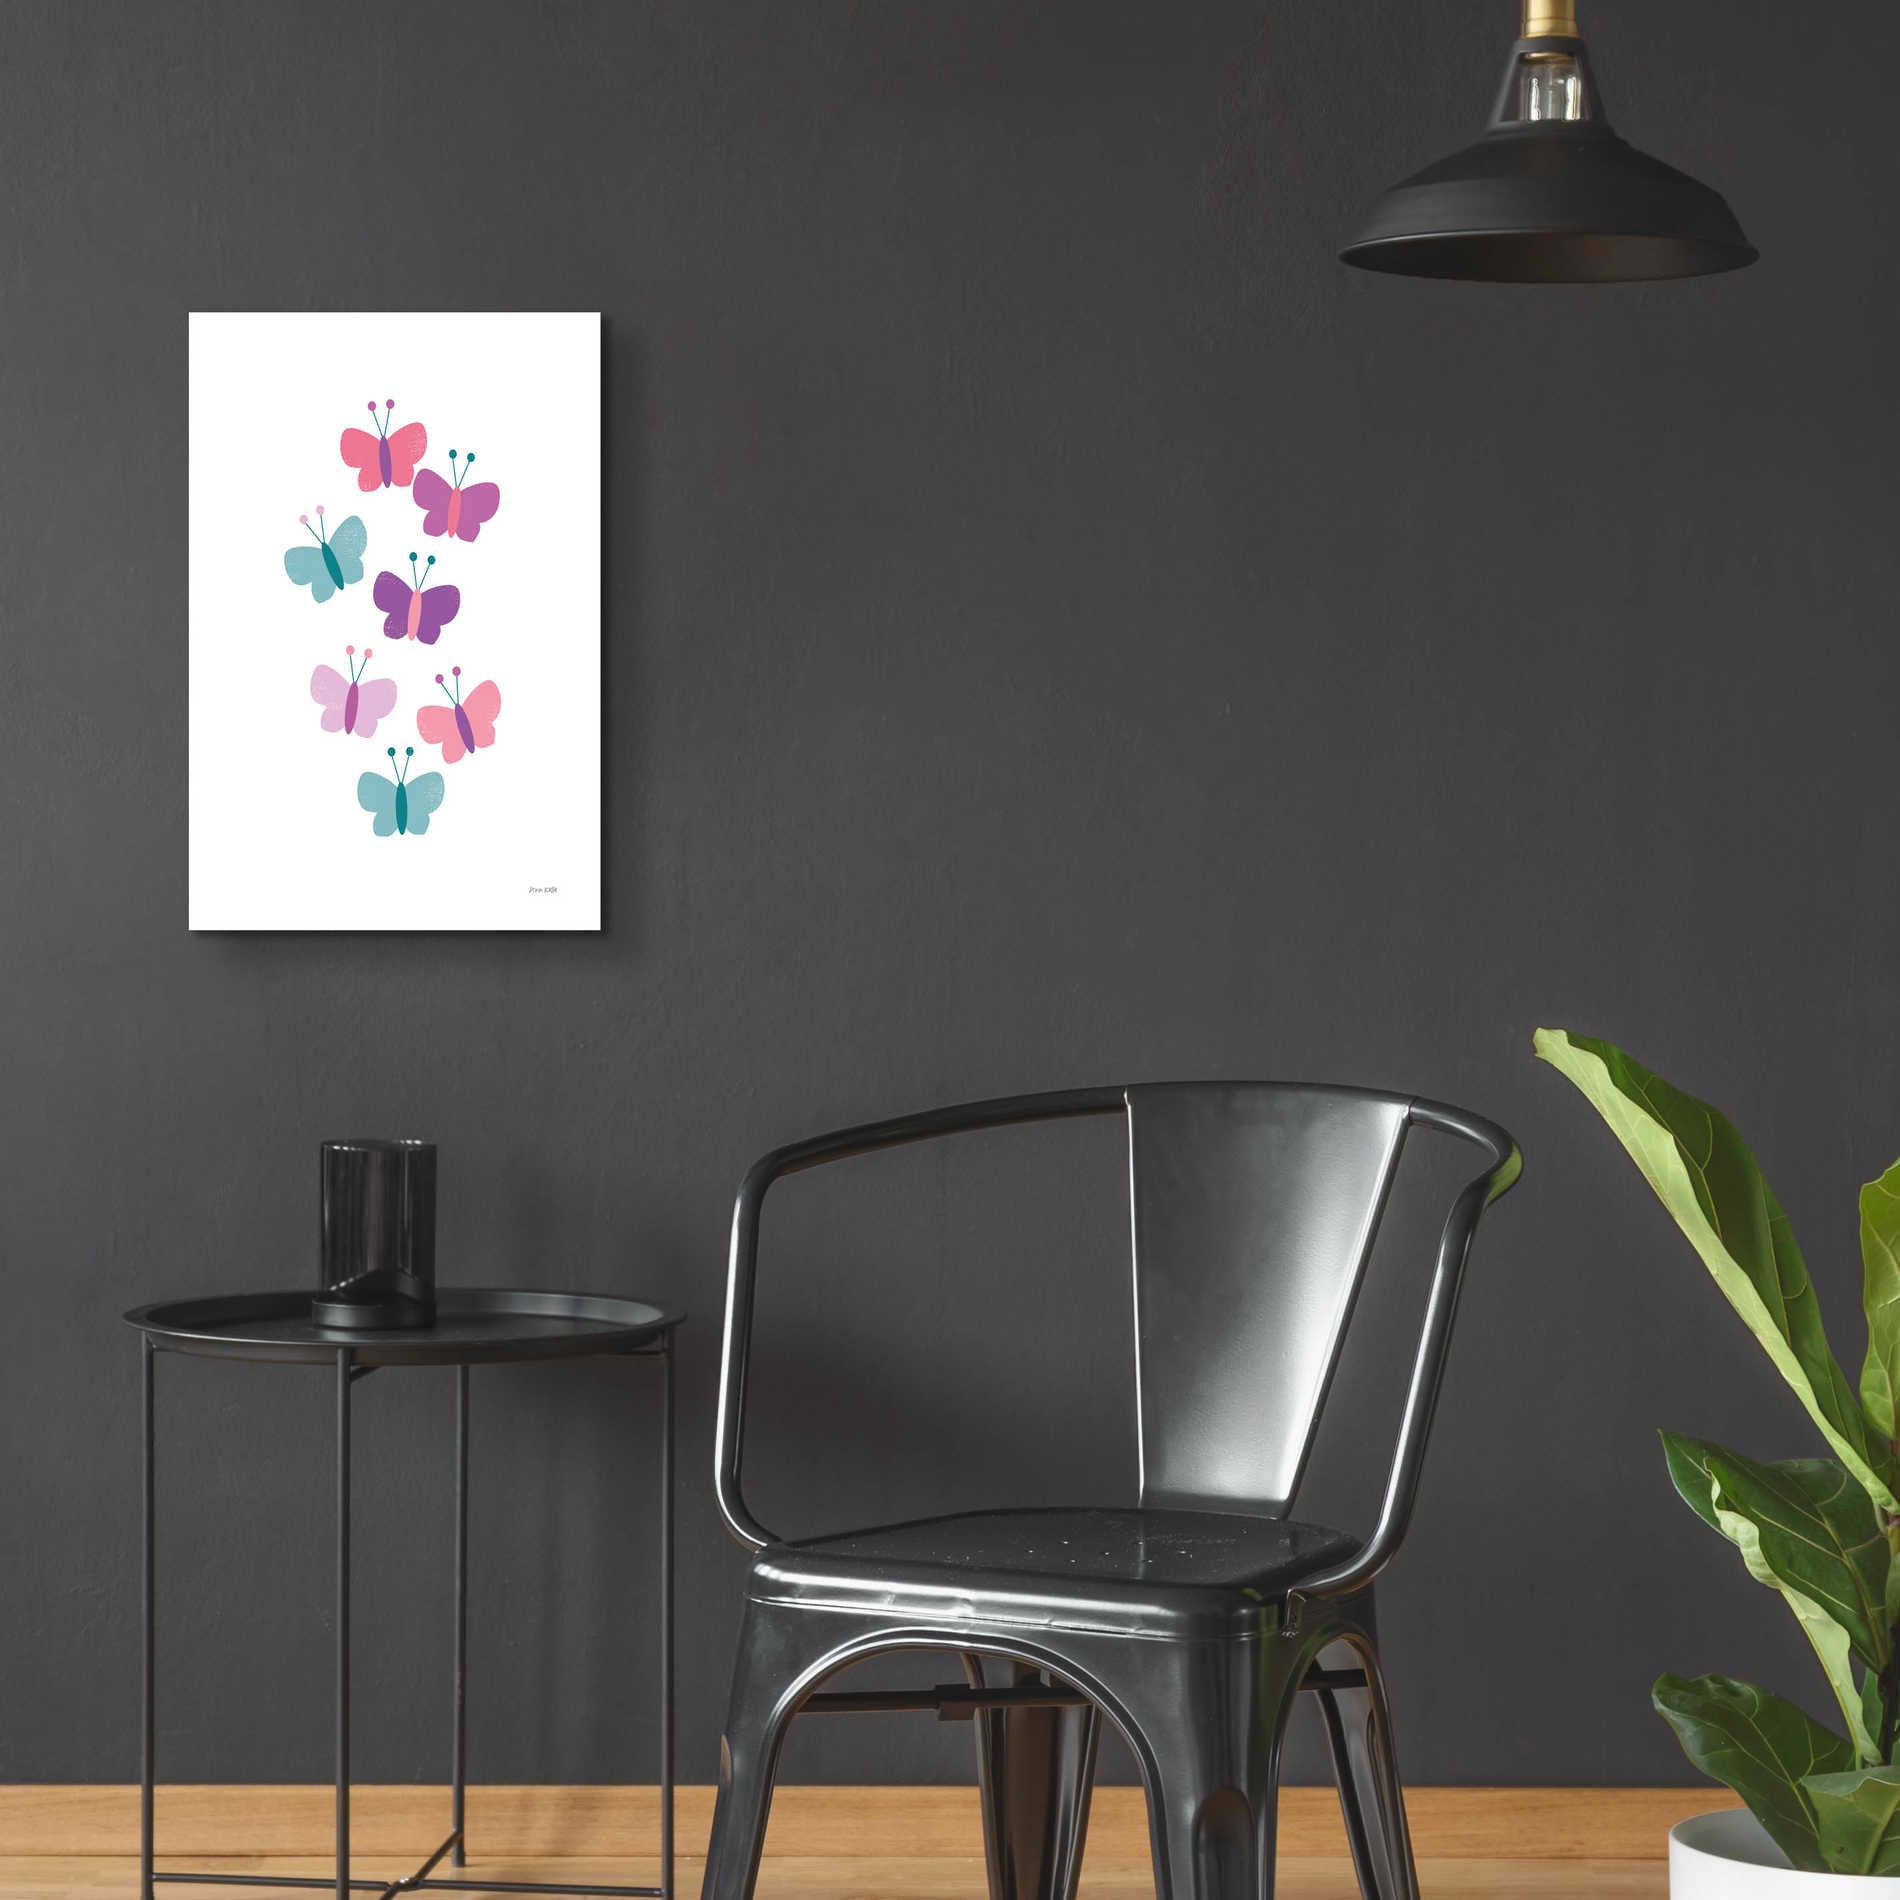 Epic Art 'Butterfly Friends Girly' by Ann Kelle Designs, Acrylic Glass Wall Art,16x24